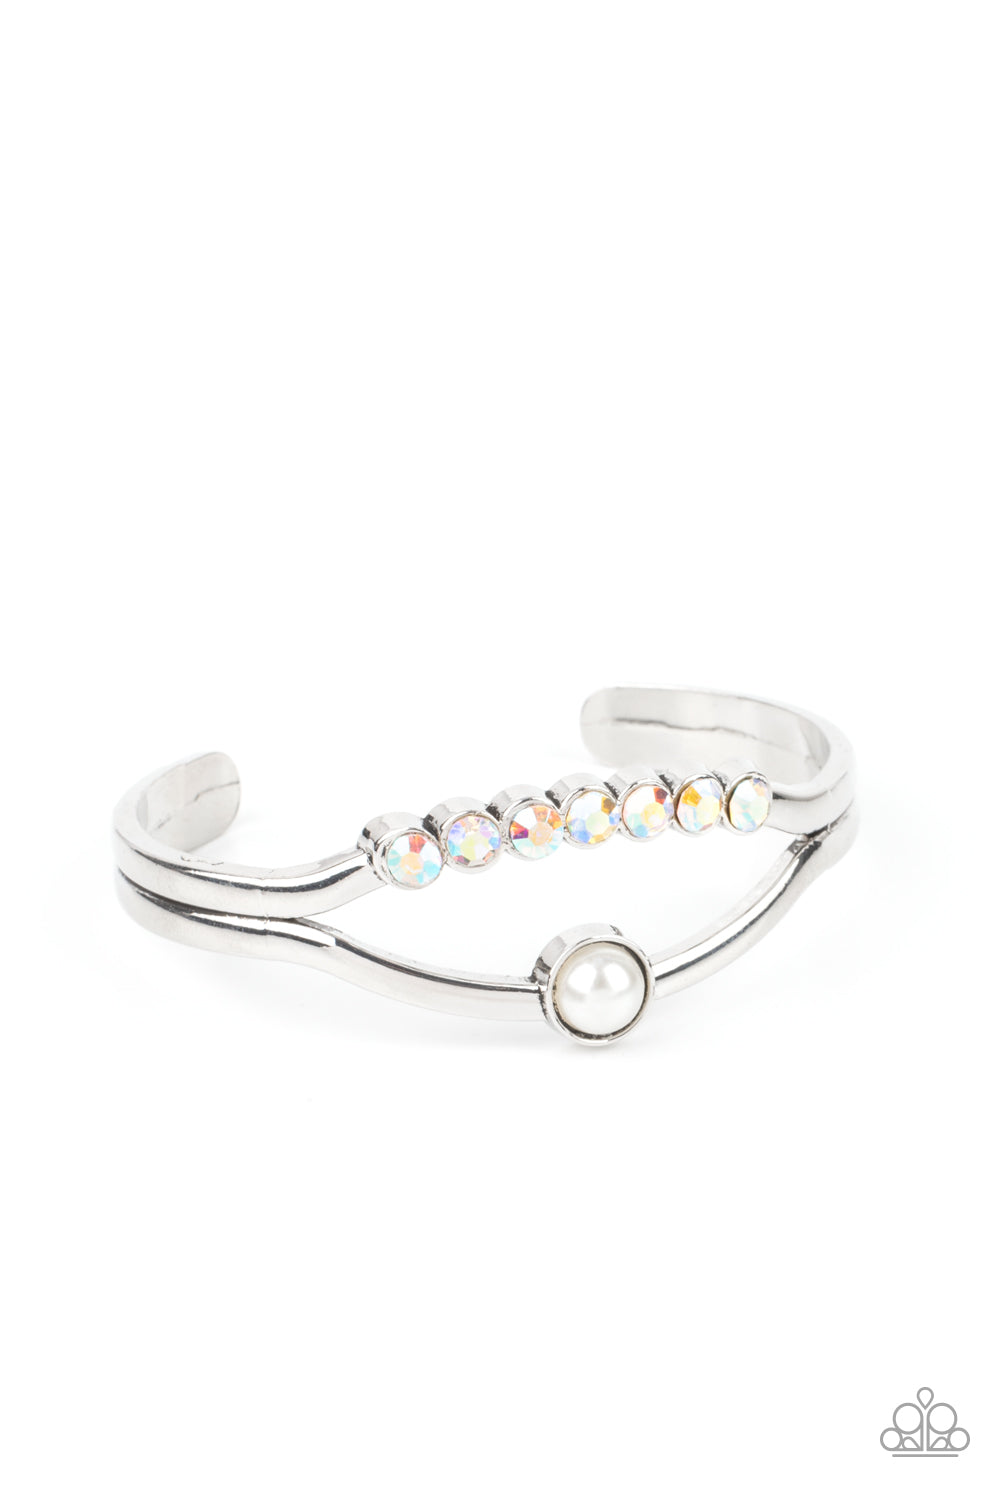 Palace Prize - Multicolor Iridescent cuff bracelet